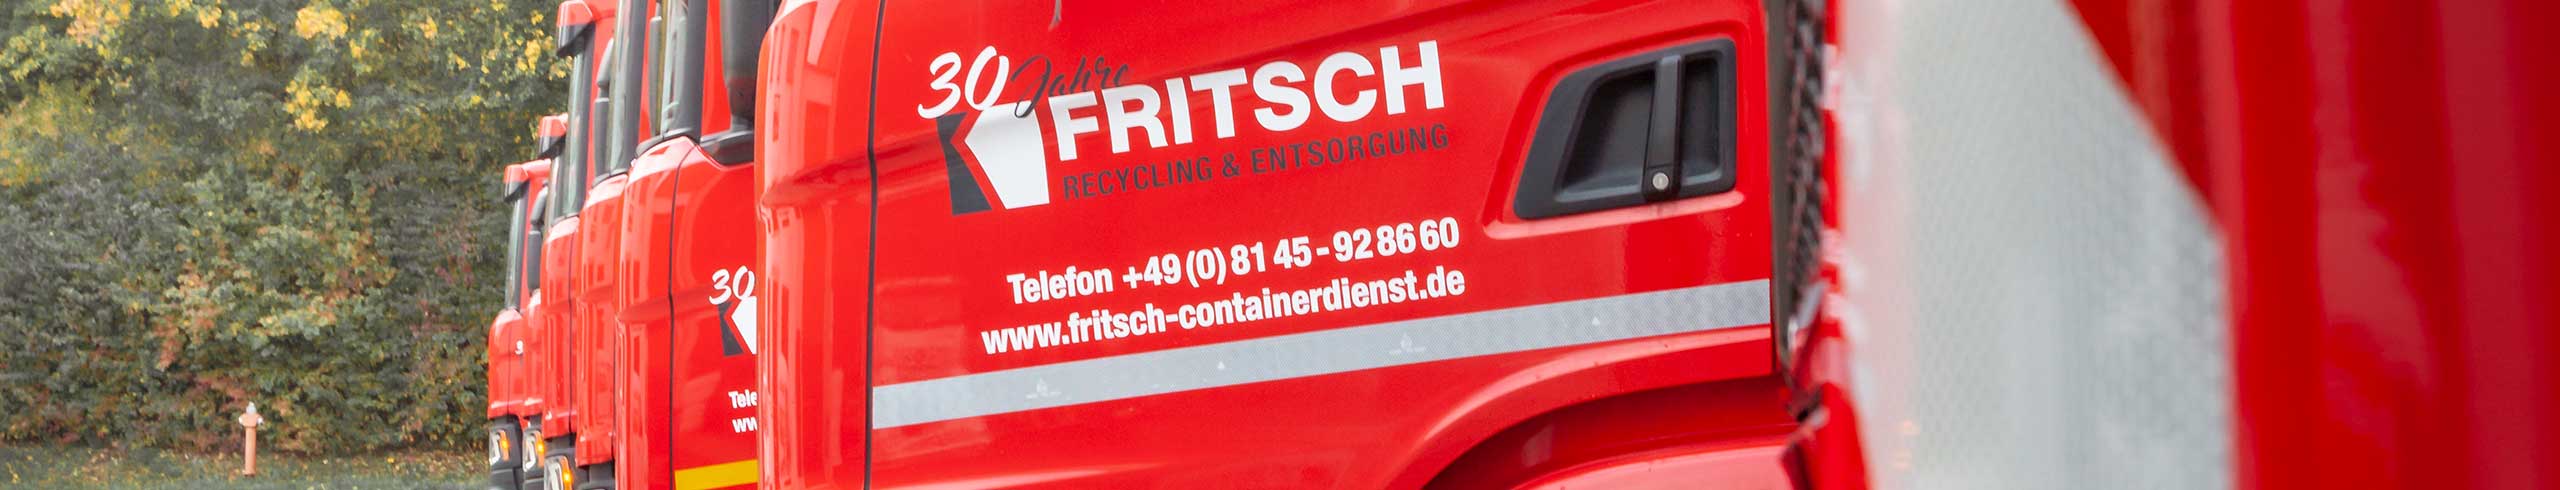 Fritsch Recycling und Entsorgung in Fürstenfeldbruck